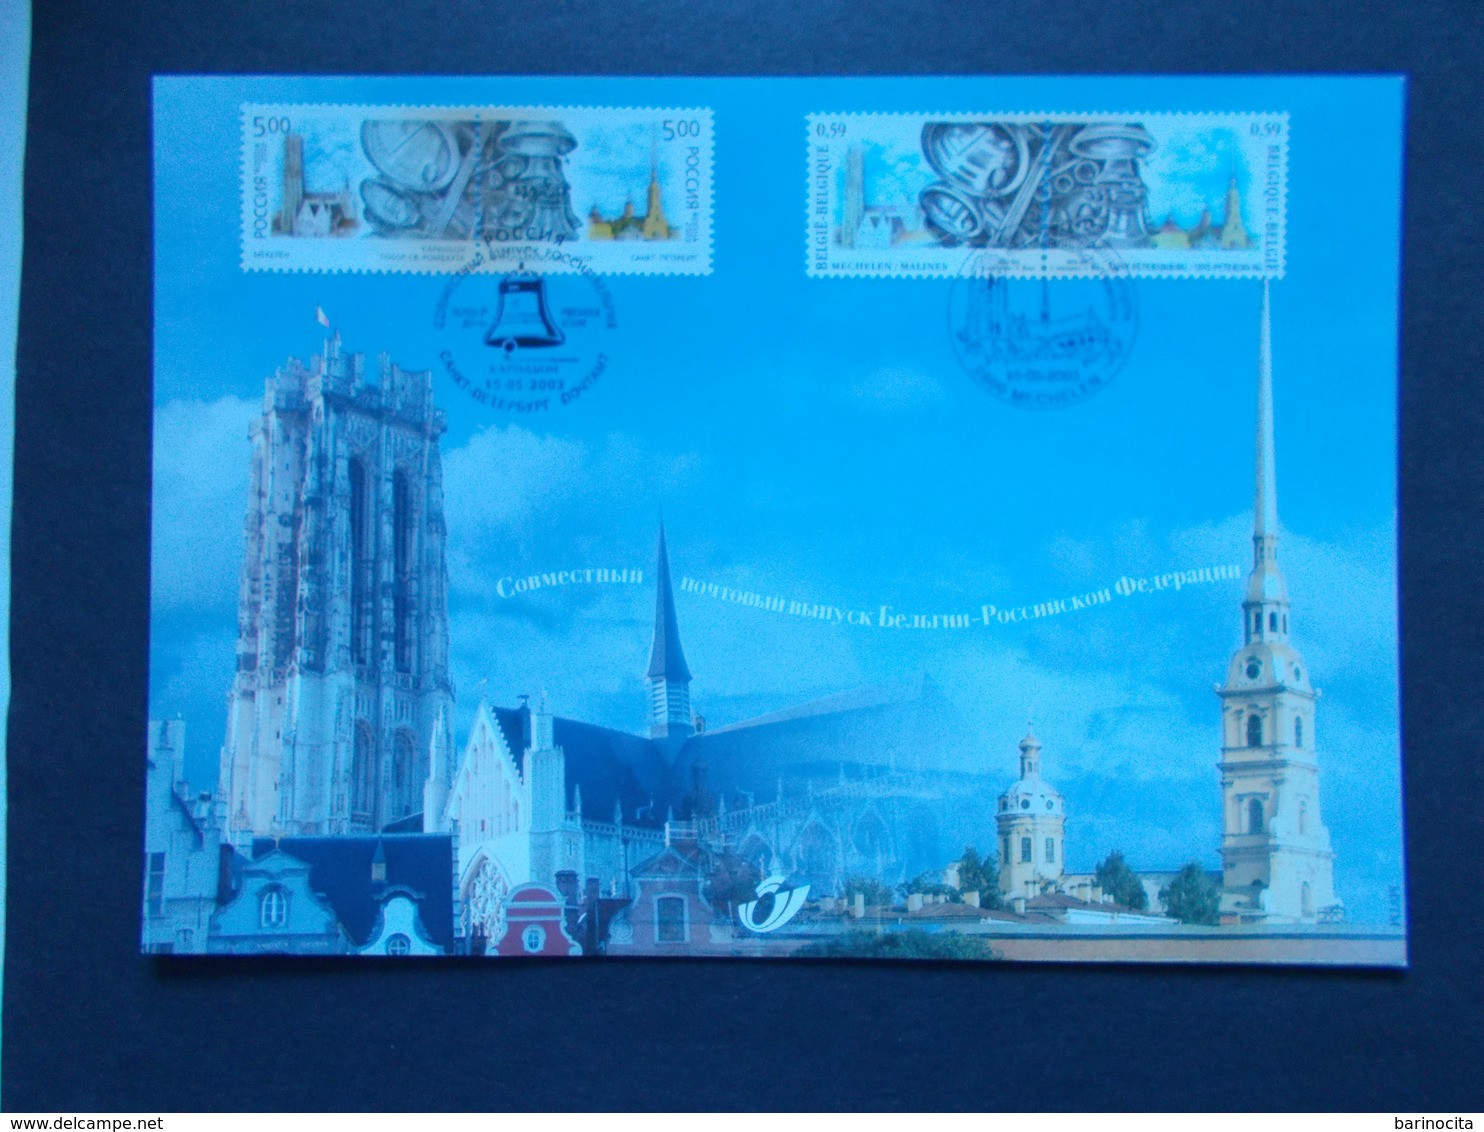 BELGIQUE -   N° 3170  HK  Année  2003   EMISSIONS  COMMUNES  RUSSIE    ( Voir Photo ) 68 - Herdenkingskaarten - Gezamelijke Uitgaven [HK]